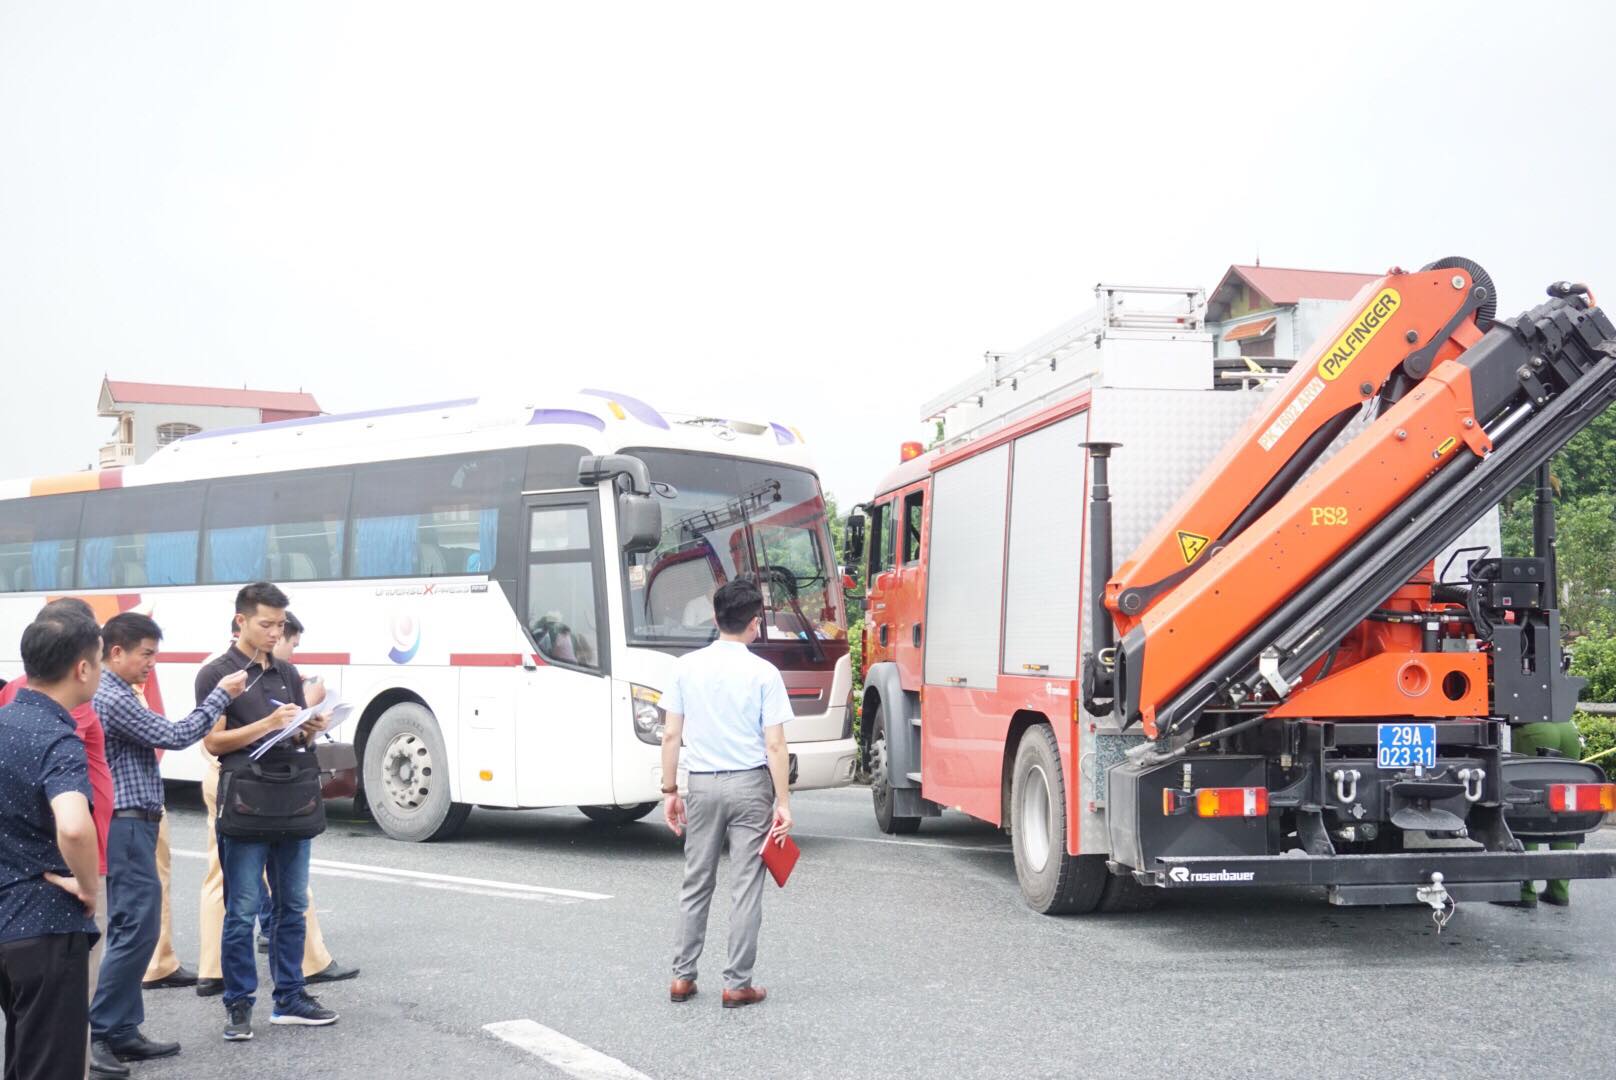 Chiếc xe cứu hoả và xe khách được điều động đến hiện trường tái hiện lại vụ tai nạn